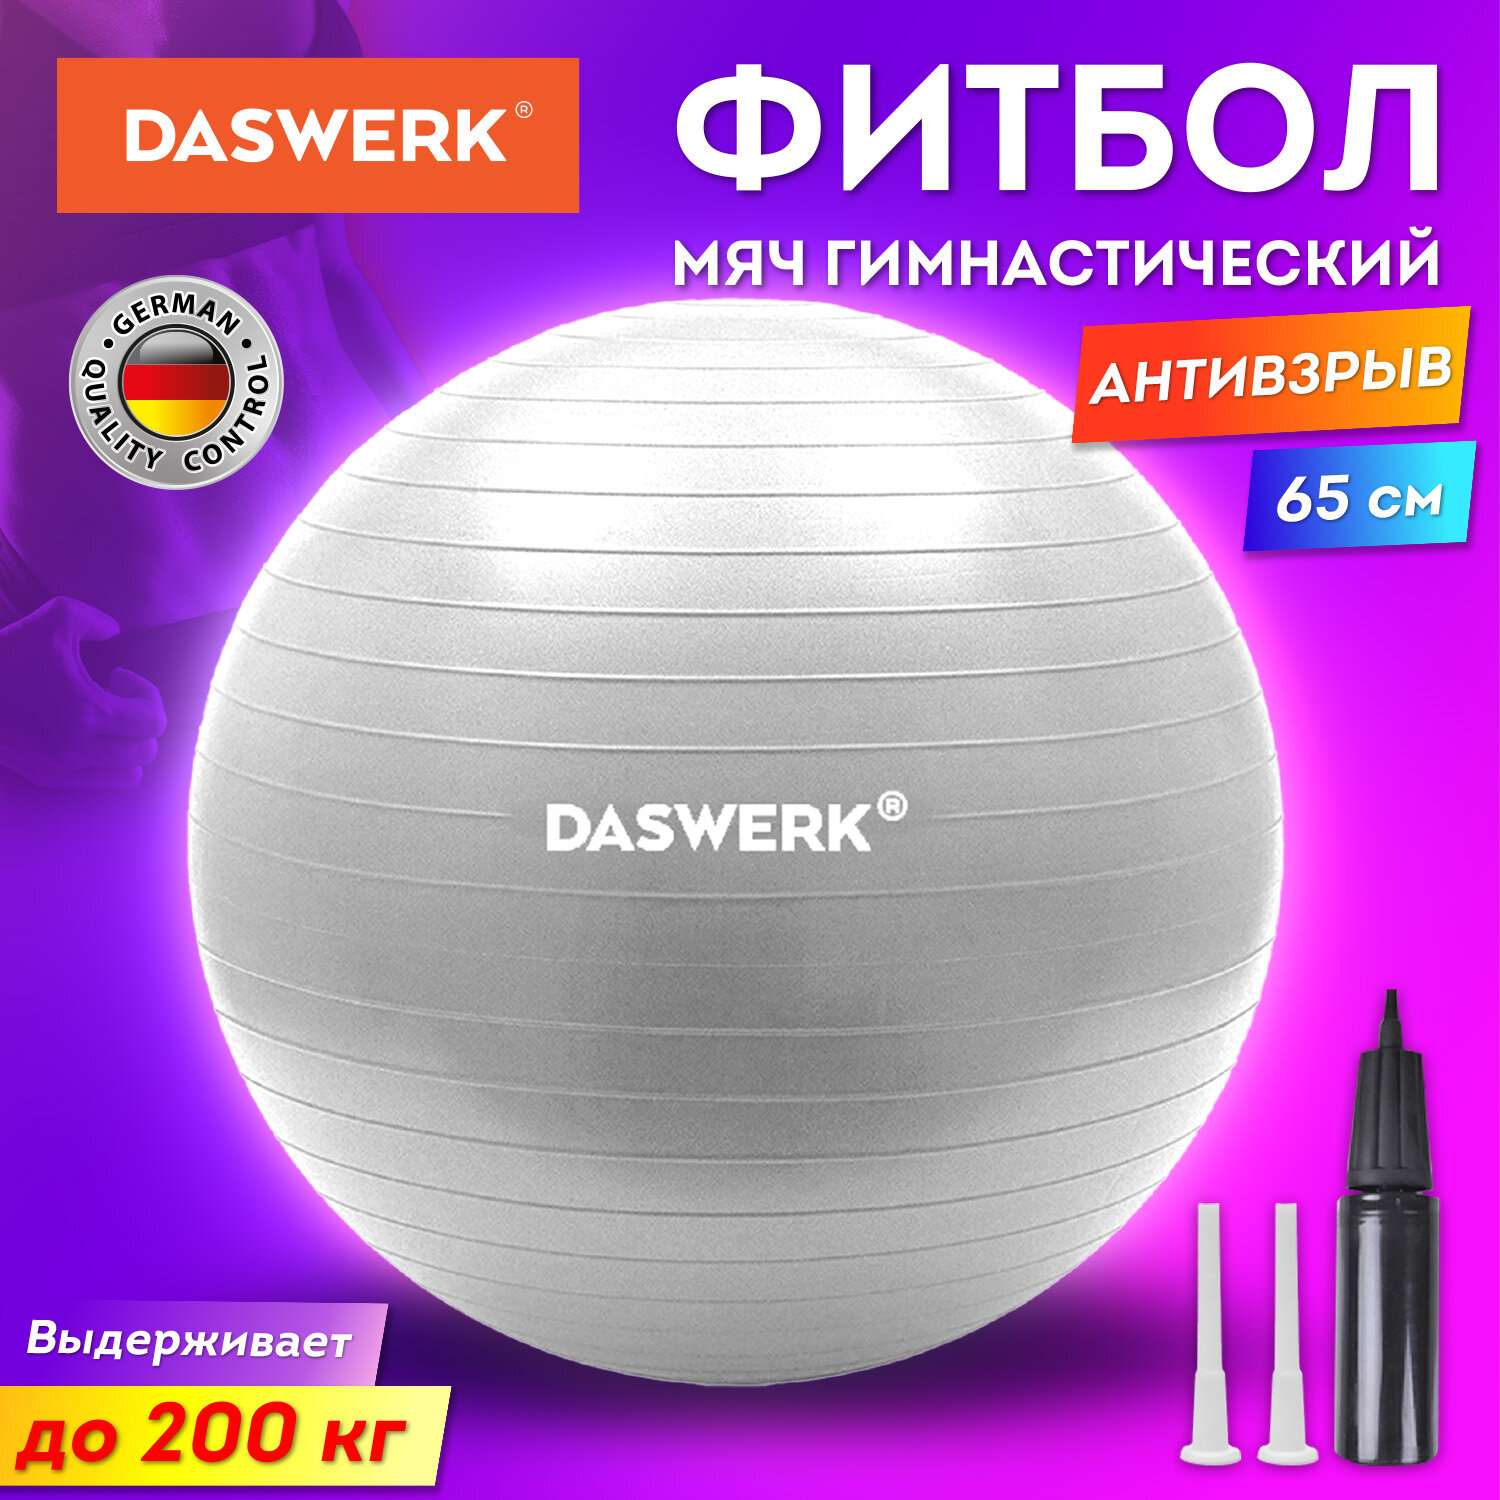 Фитбол DASWERK мяч гимнастический 65 см с эффектом антивзрыв и ручным насосом - фото 2